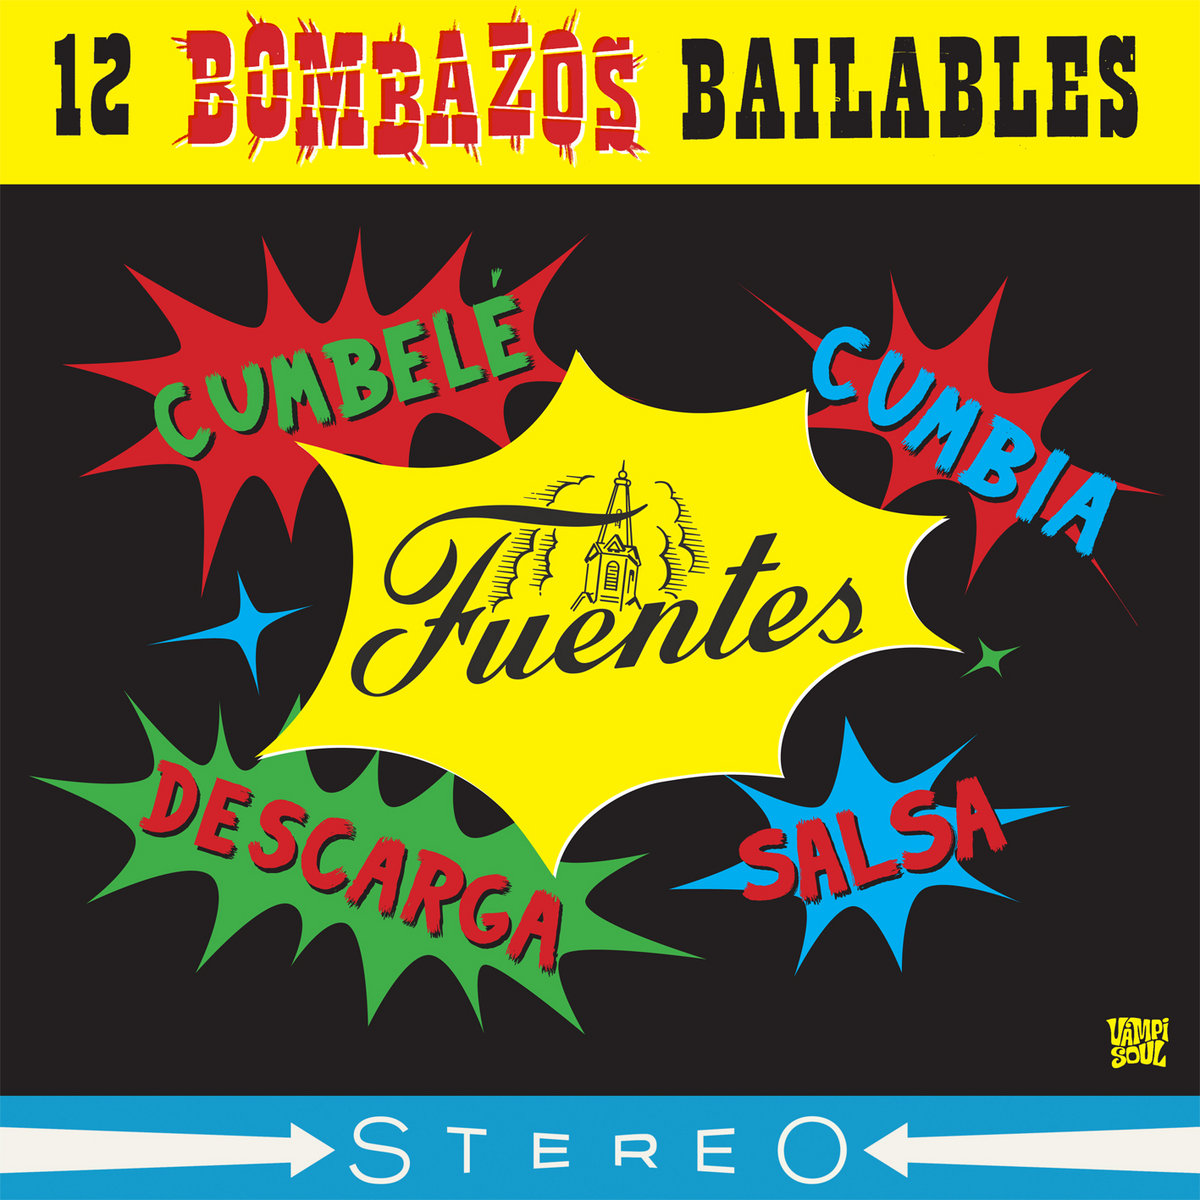 VV.AA. "12 Bombazos Bailables" CD